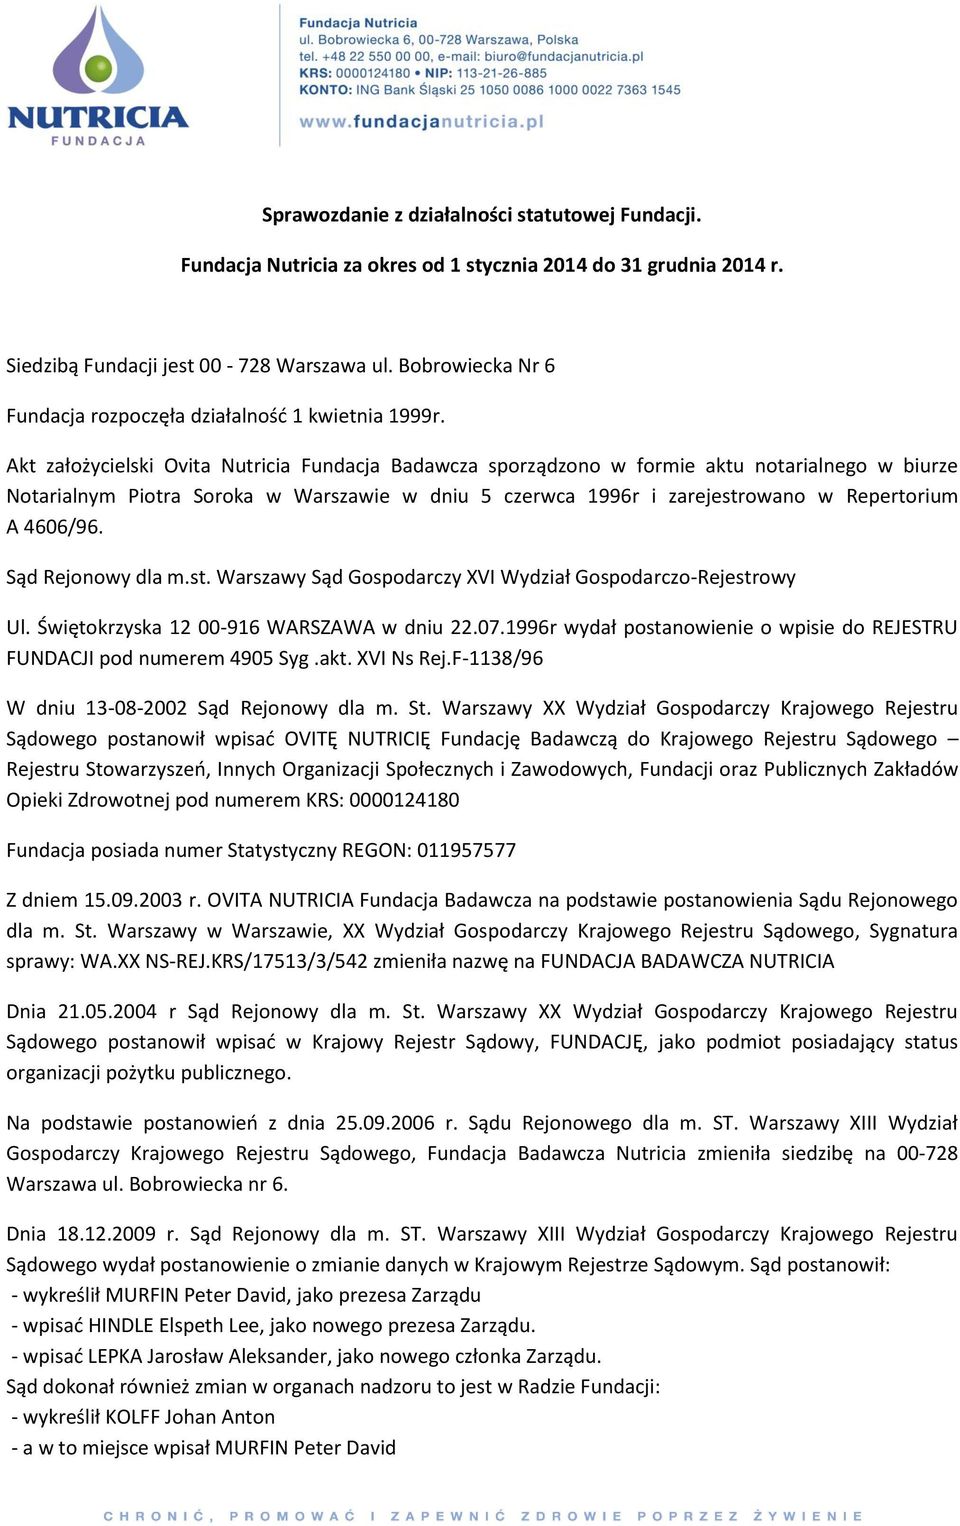 Akt założycielski Ovita Nutricia Fundacja Badawcza sporządzono w formie aktu notarialnego w biurze Notarialnym Piotra Soroka w Warszawie w dniu 5 czerwca 1996r i zarejestrowano w Repertorium A